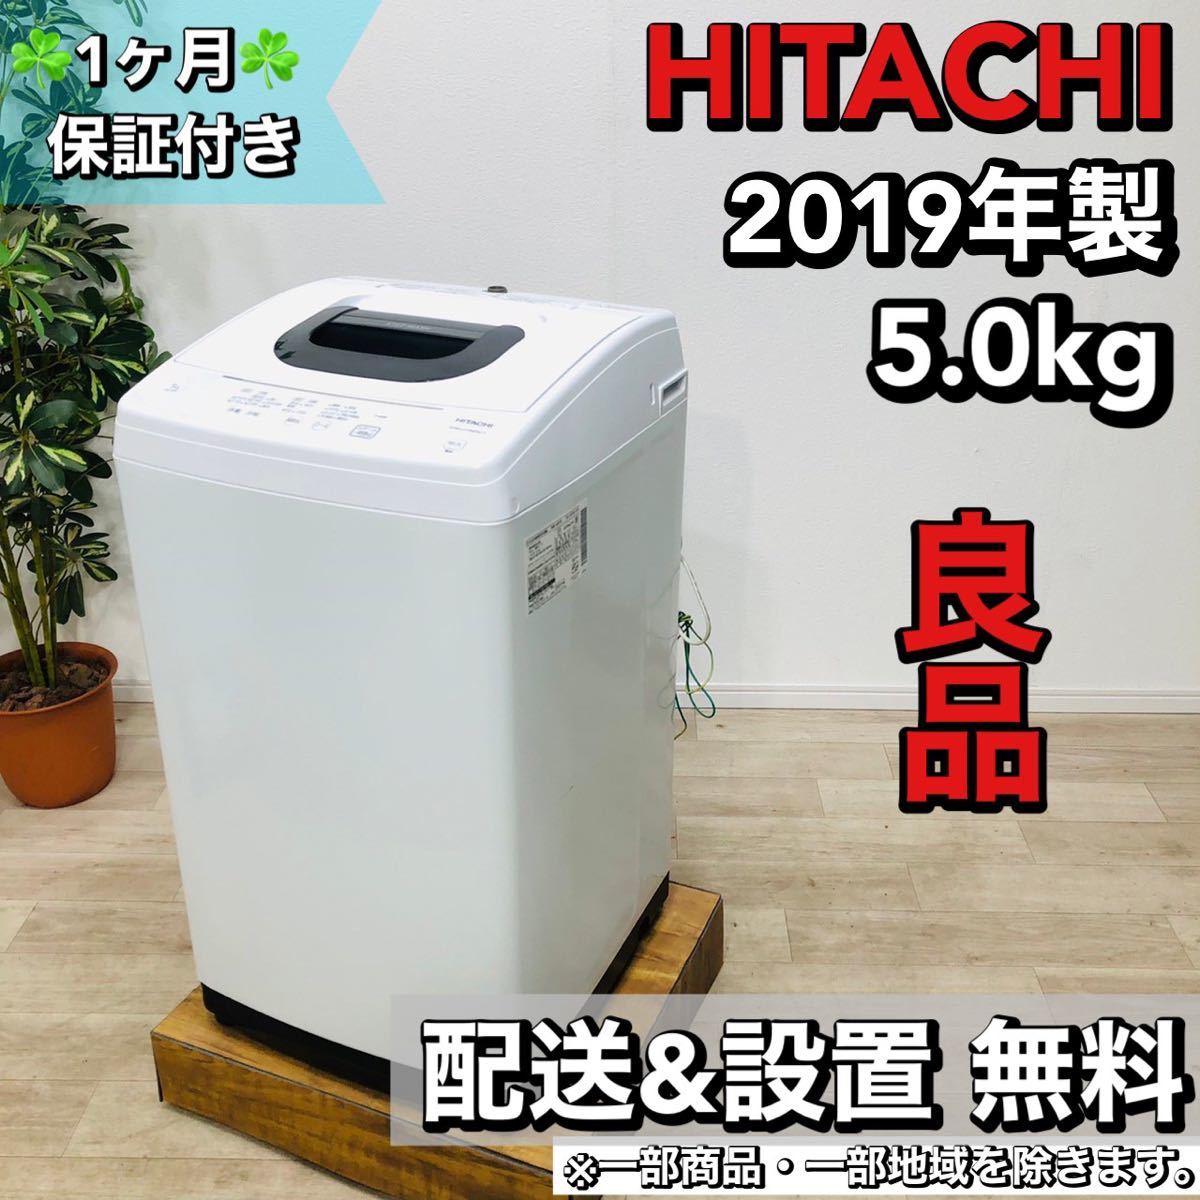 HITACHI a1492 洗濯機 5.0kg 2019年製 4